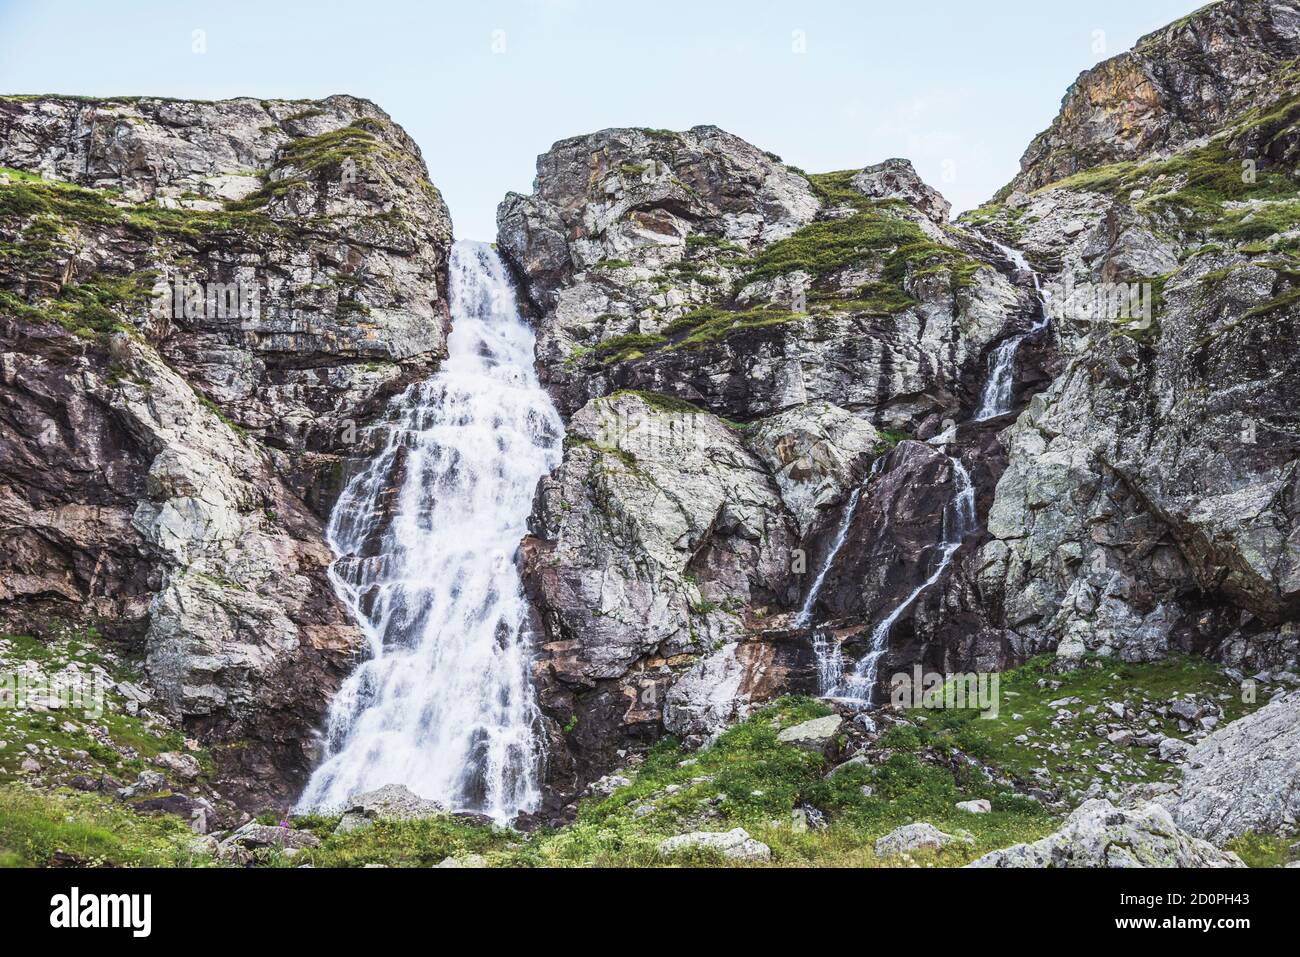 Mountain waterfall. Caucasus, Karachai-Cherkess Republic, Russia Stock Photo